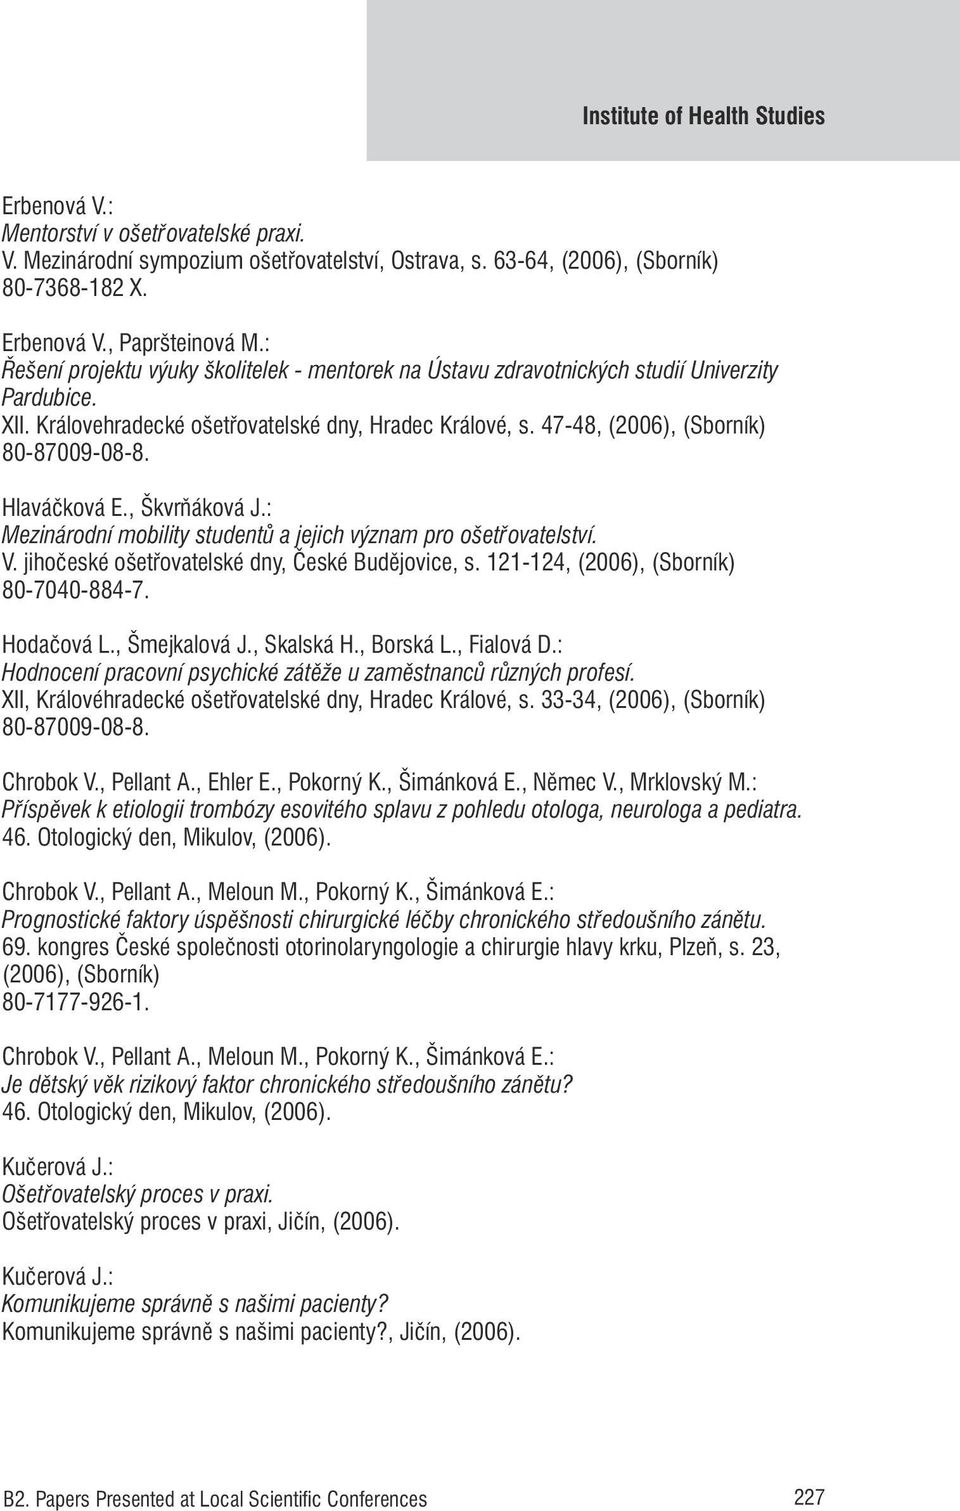 Hlaváčková E., Škvrňáková J.: Mezinárodní mobility studentů a jejich význam pro ošetřovatelství. V. jihočeské ošetřovatelské dny, České Budějovice, s. 121-124, (2006), (Sborník) 80-7040-884-7.